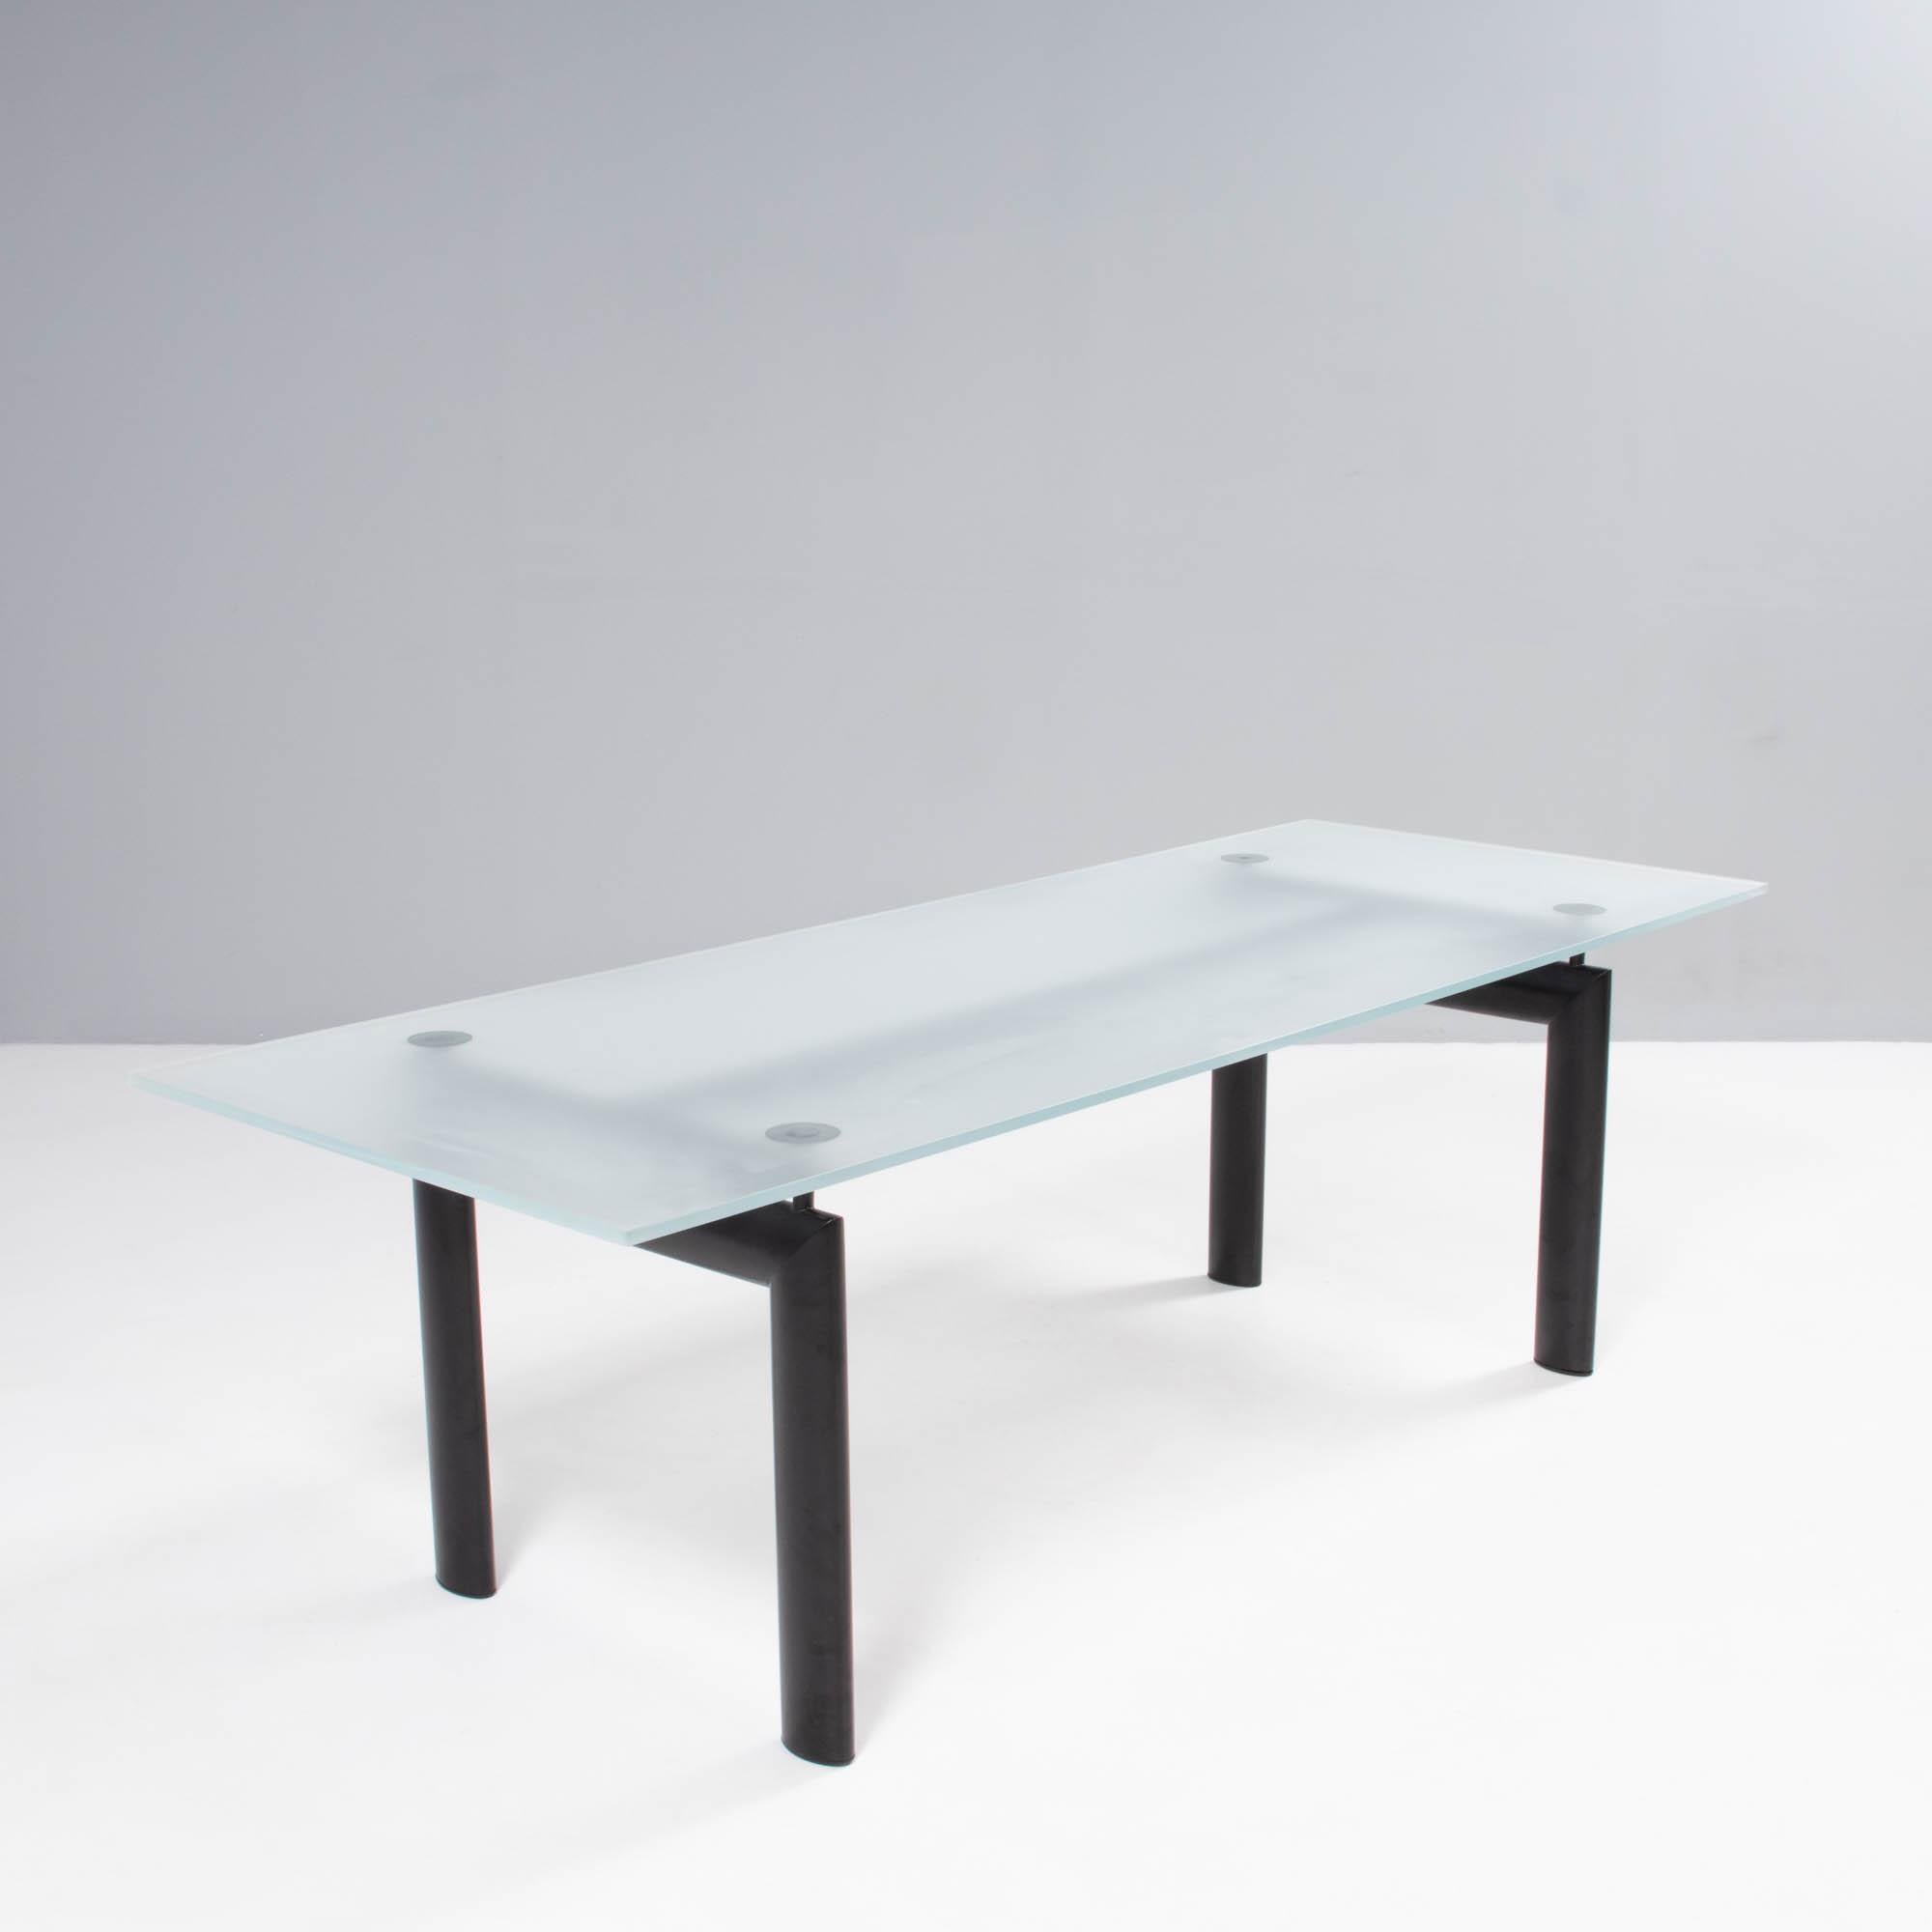 Conçue à l'origine en 1928 par Le Corbusier, Charlotte Perriand et Jean Jeanerret, la collection LC réduit le design des meubles aux éléments et aux silhouettes les plus essentiels, ce que démontre parfaitement la table LC6.

La base, construite en